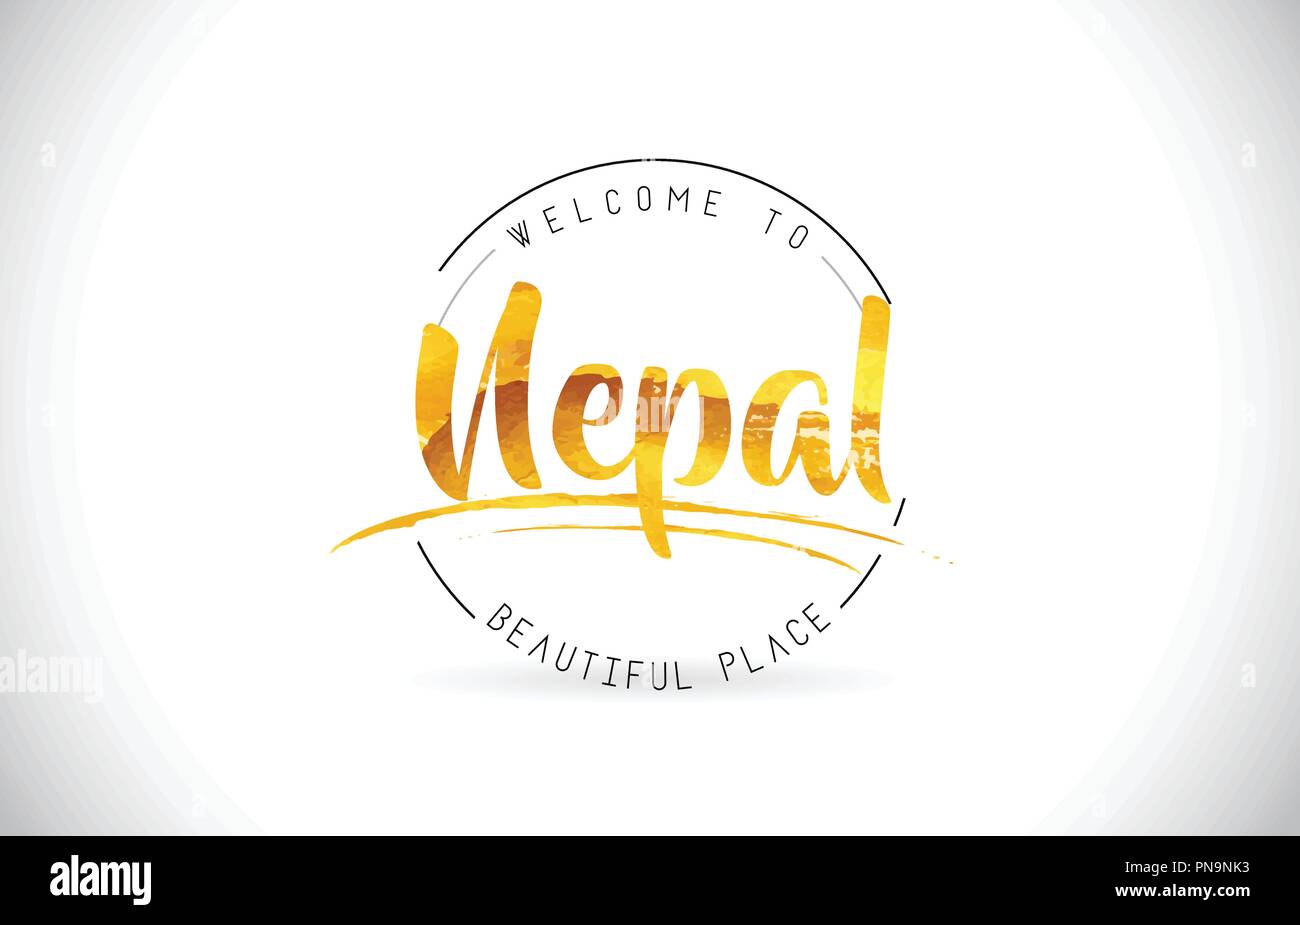 Le Népal Bienvenue au mot du texte avec des polices manuscrites et Golden Design Texture Illustration vecteur. Illustration de Vecteur